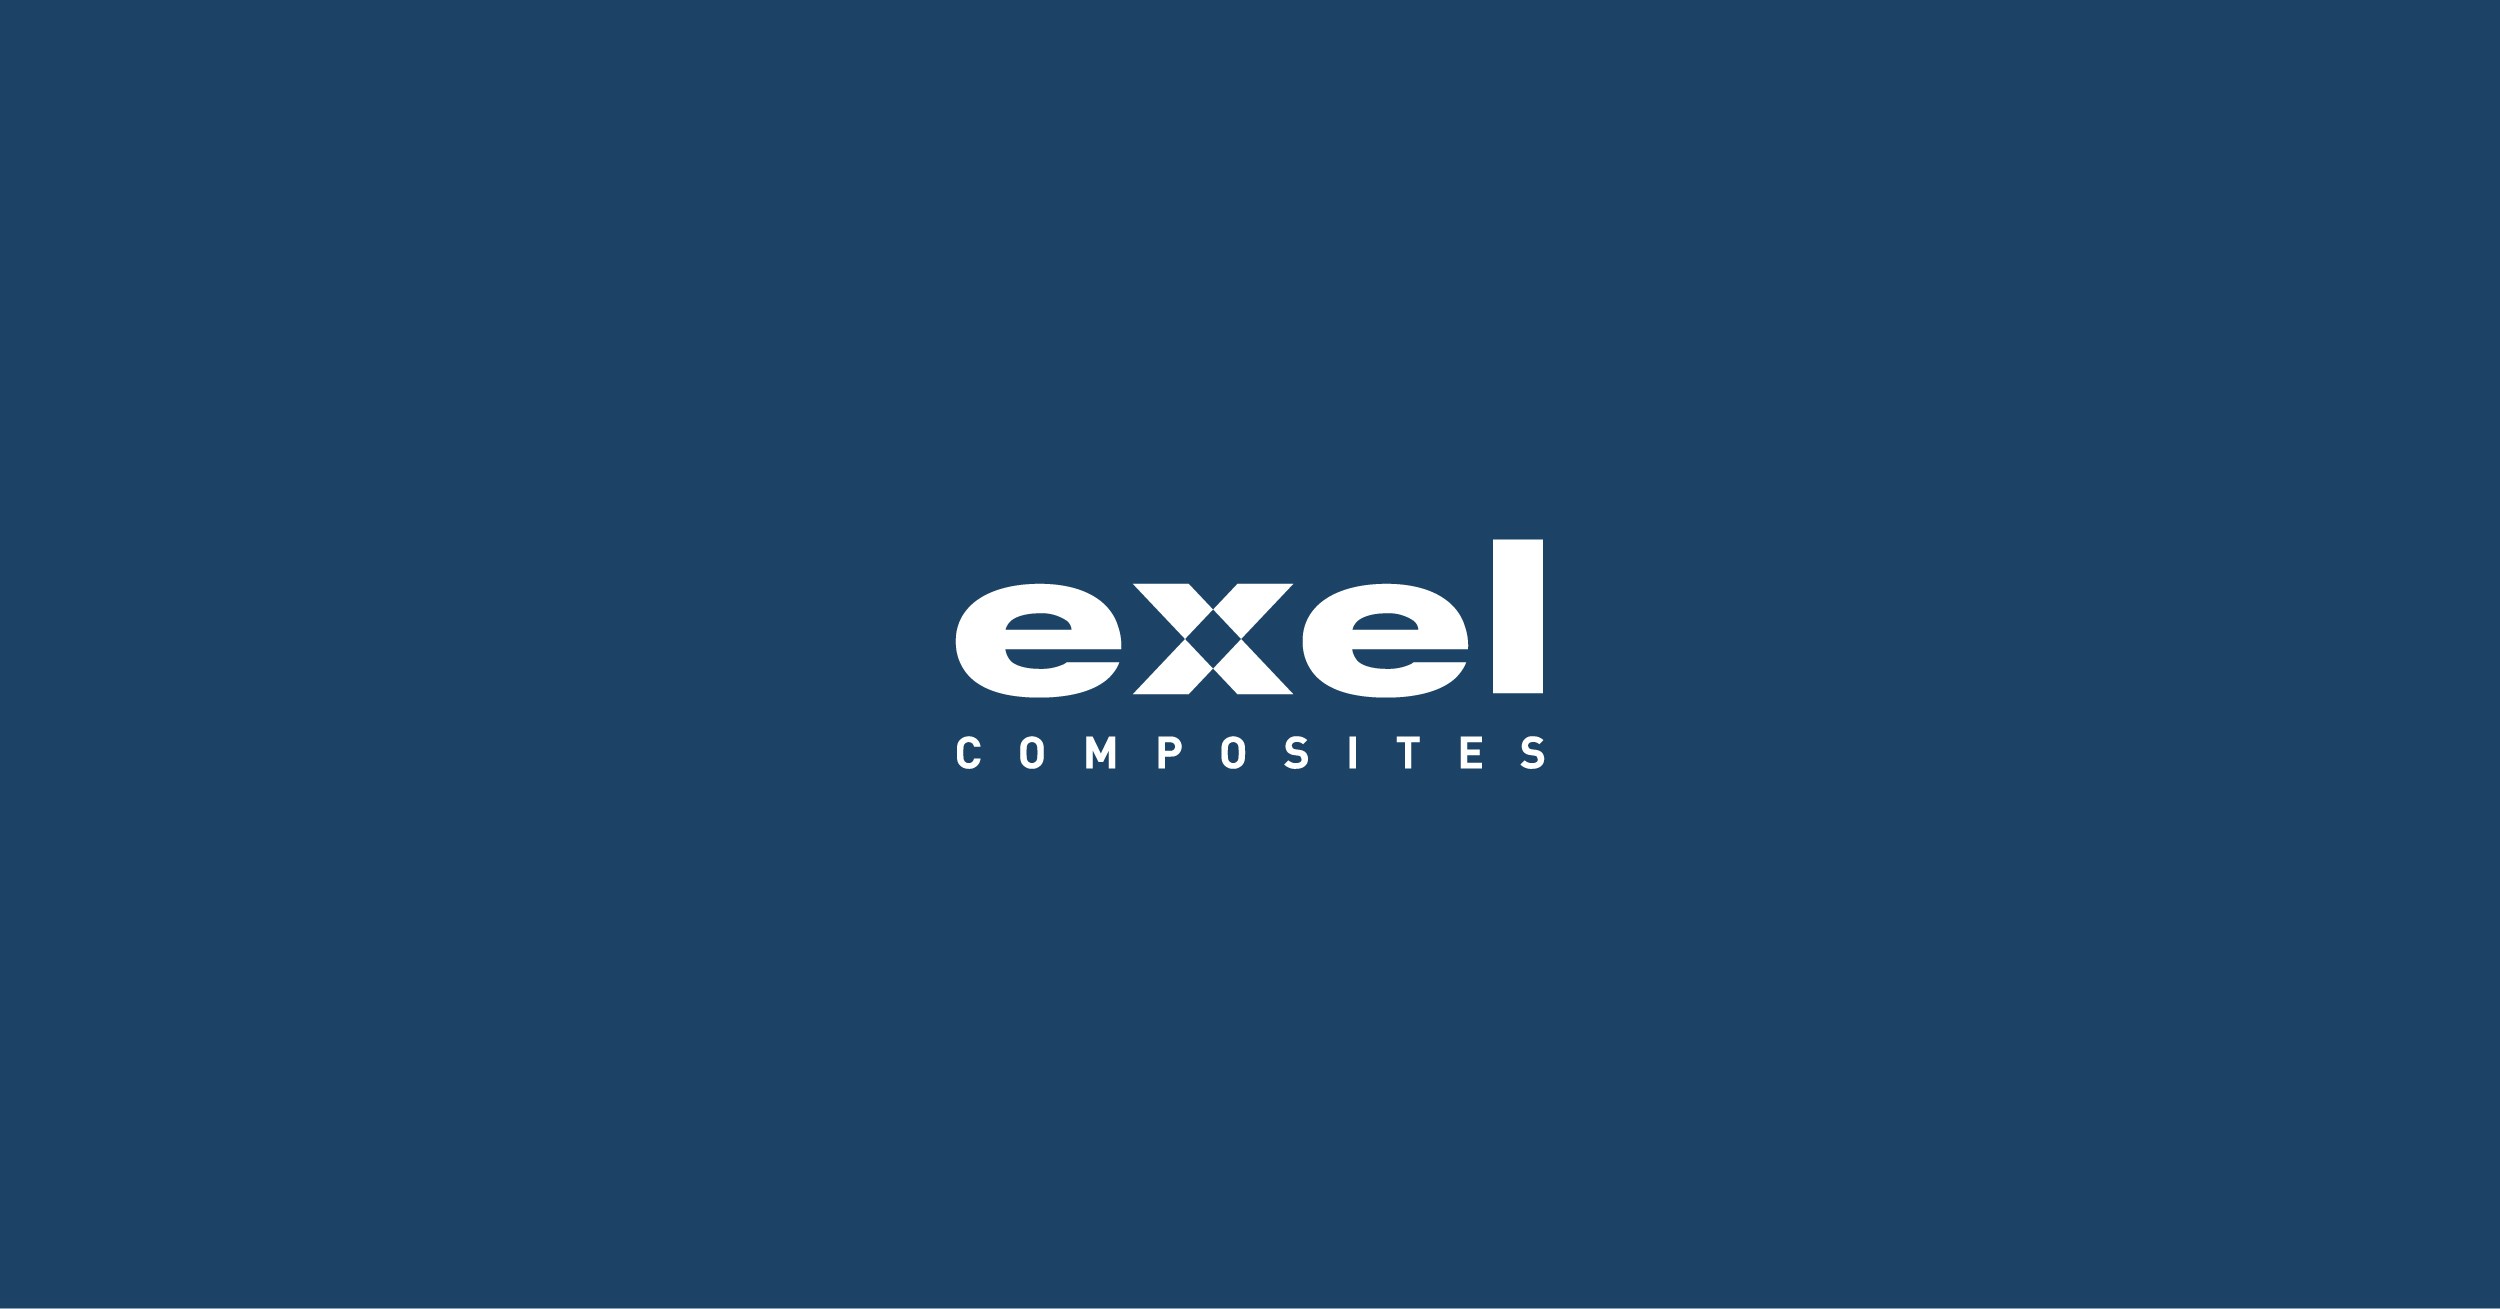 (c) Exelcomposites.com